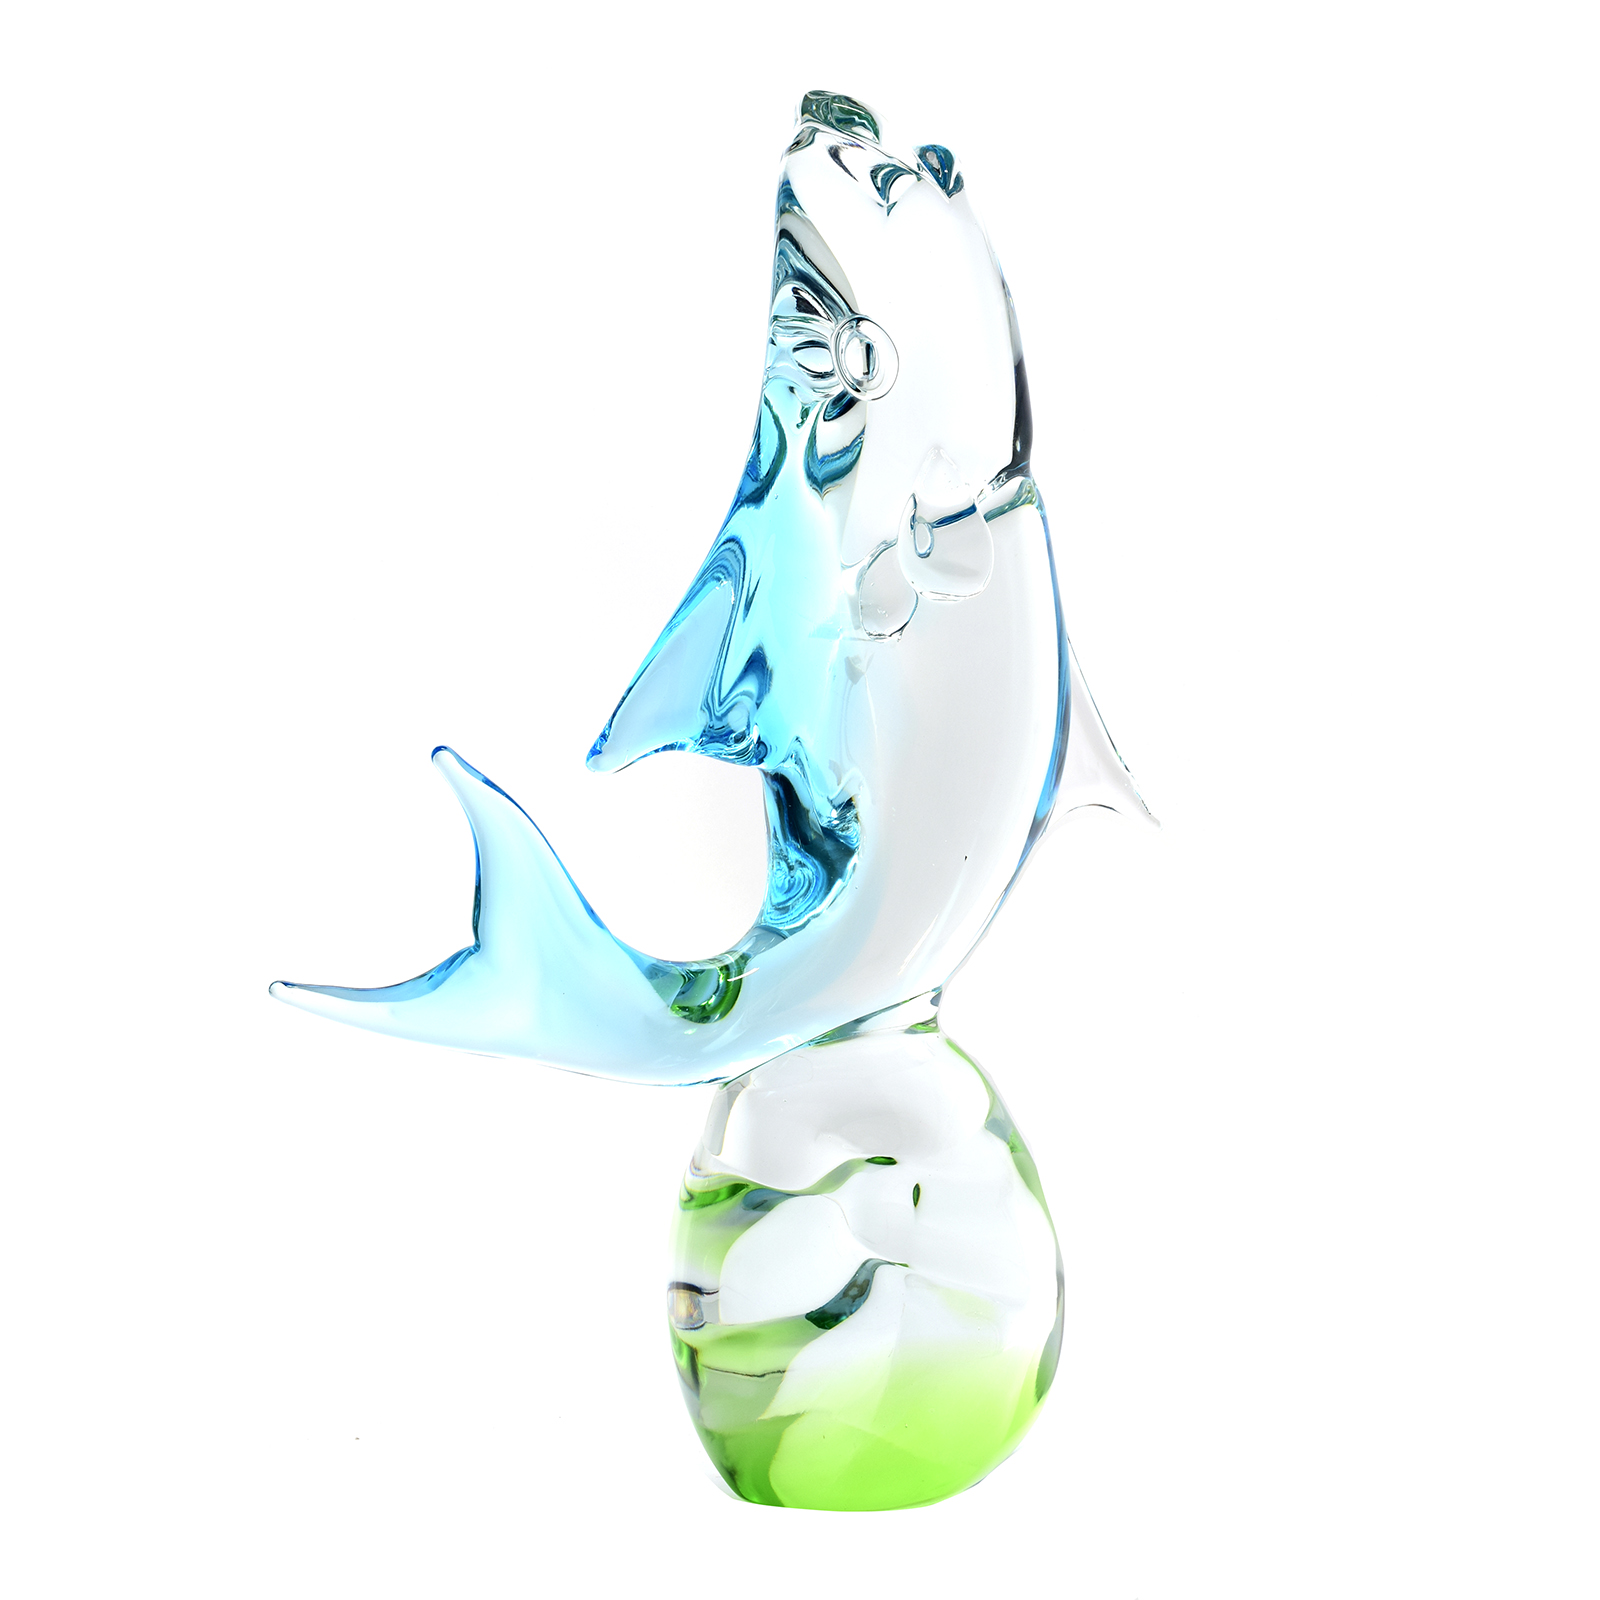 Submerged Fish in Murano Glass - (Art. 3627)